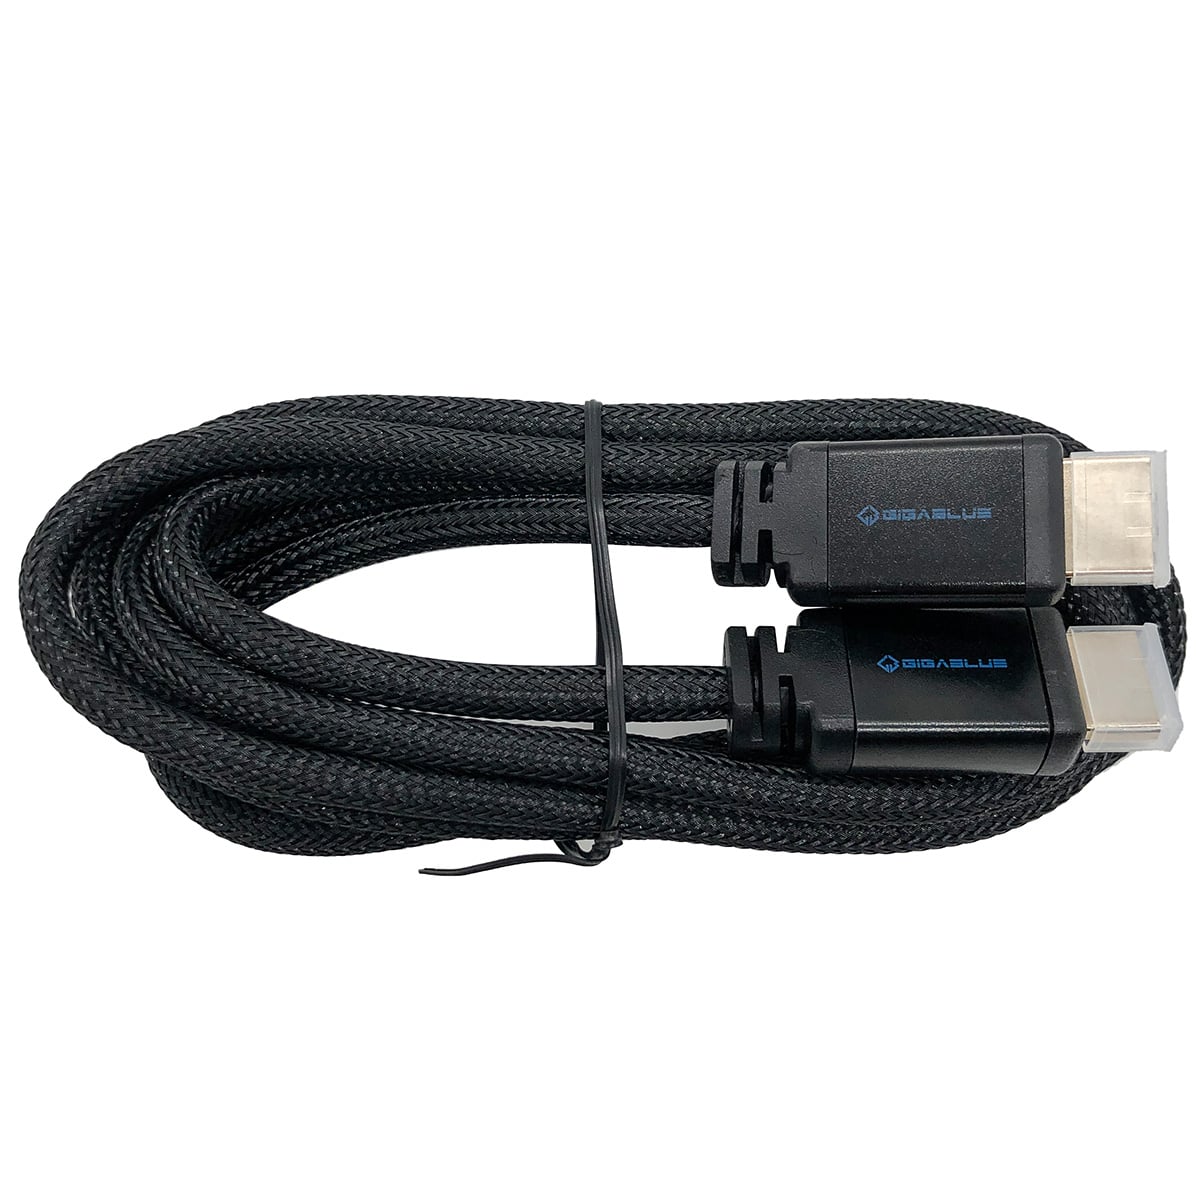 Gigablue Ultra 4K HDMI 2.0 High Speed Kabel mit Ethernet (HDR, UHD 4K, 60Hz, 1,8m, schwarz)